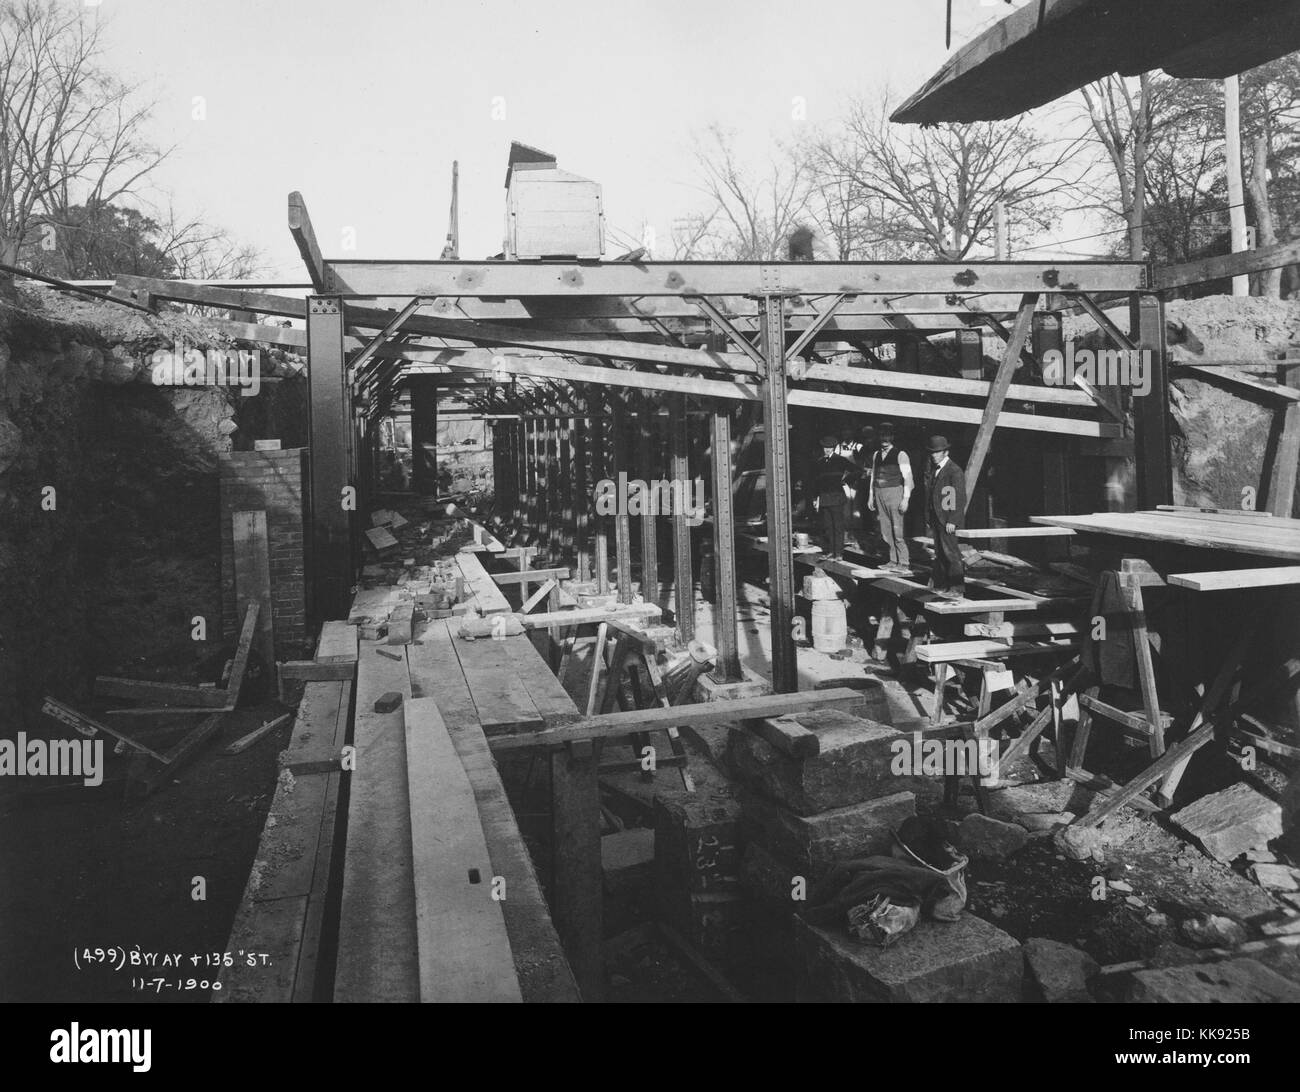 Fotografia in bianco e nero di uomini stavano in piedi presso un parzialmente agevolato cantiere sotterraneo per la metropolitana di New York, a Broadway e 135Street, New York New York, 7 novembre 1900. Dalla Biblioteca Pubblica di New York. Foto Stock